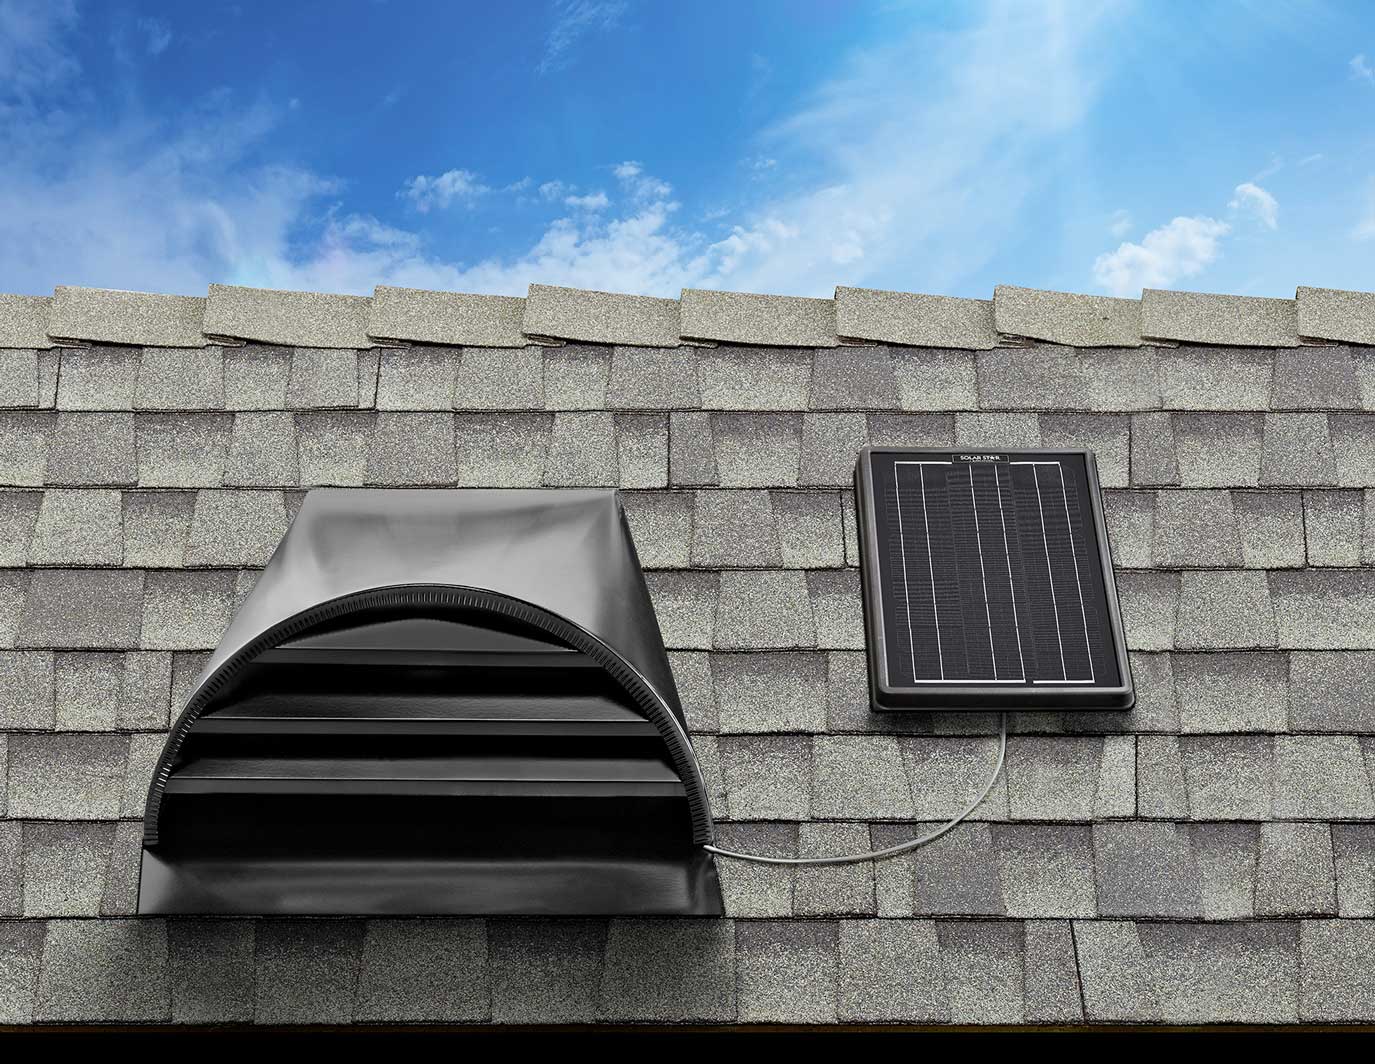 Solar star 1500 roof dormer